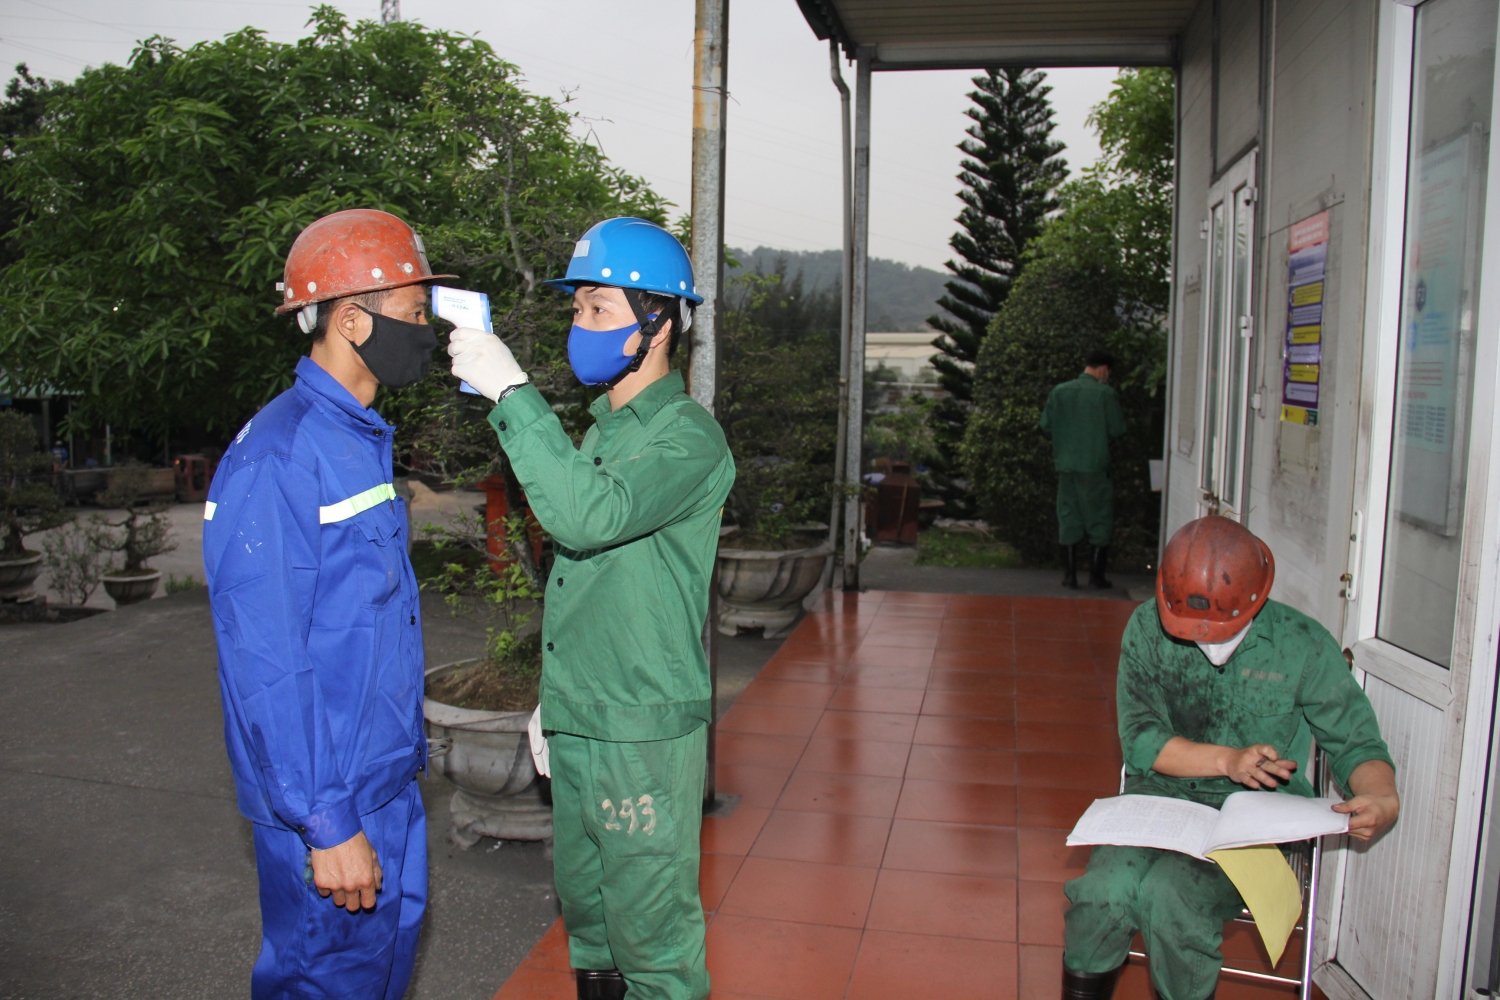 Các đơn vị TKV tại Quảng Ninh khẩn trương chống dịch Covid-19